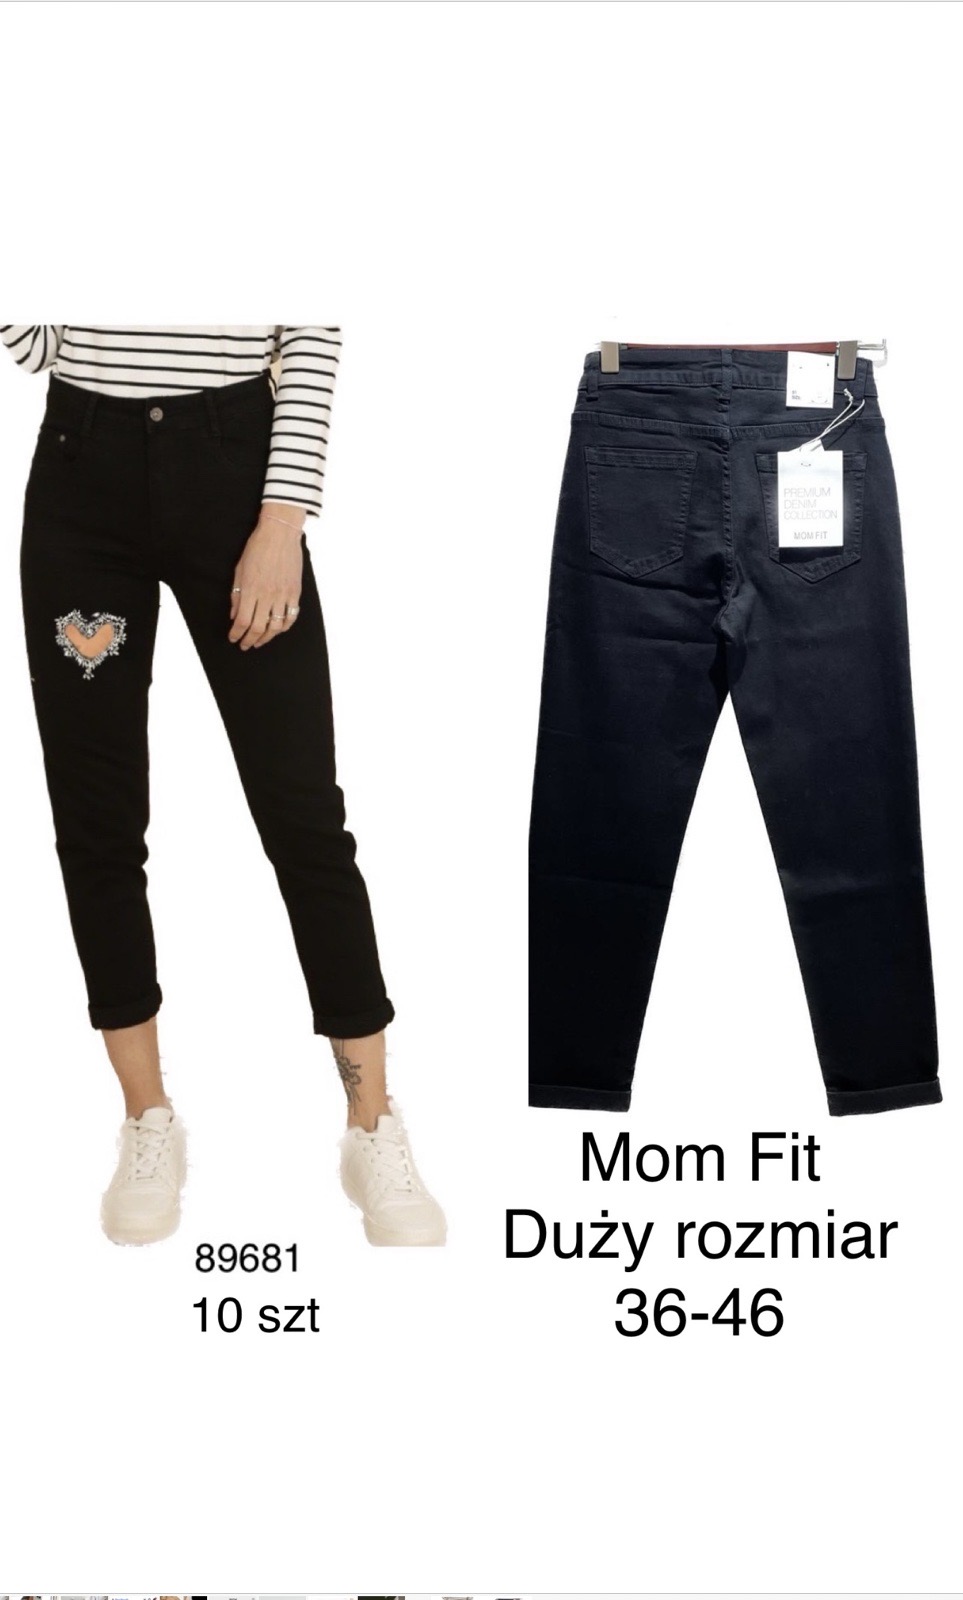 Spodnie  damskie jeans Roz 36-46.  1 kolor . Paczka 10szt